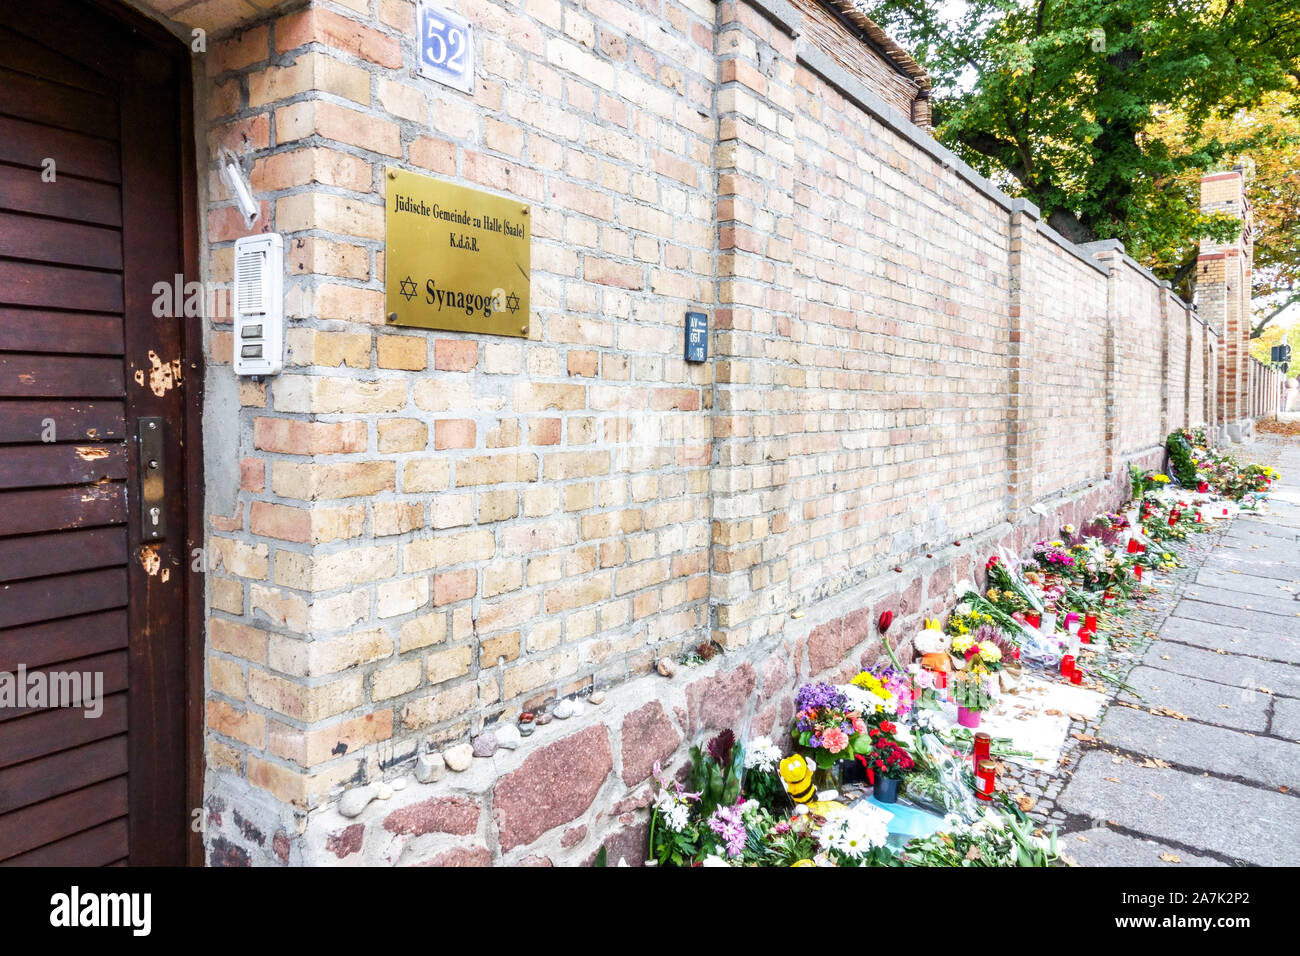 L'Allemagne attaque terroriste, les trous de balles dans la porte de la synagogue Saale, Allemagne Banque D'Images